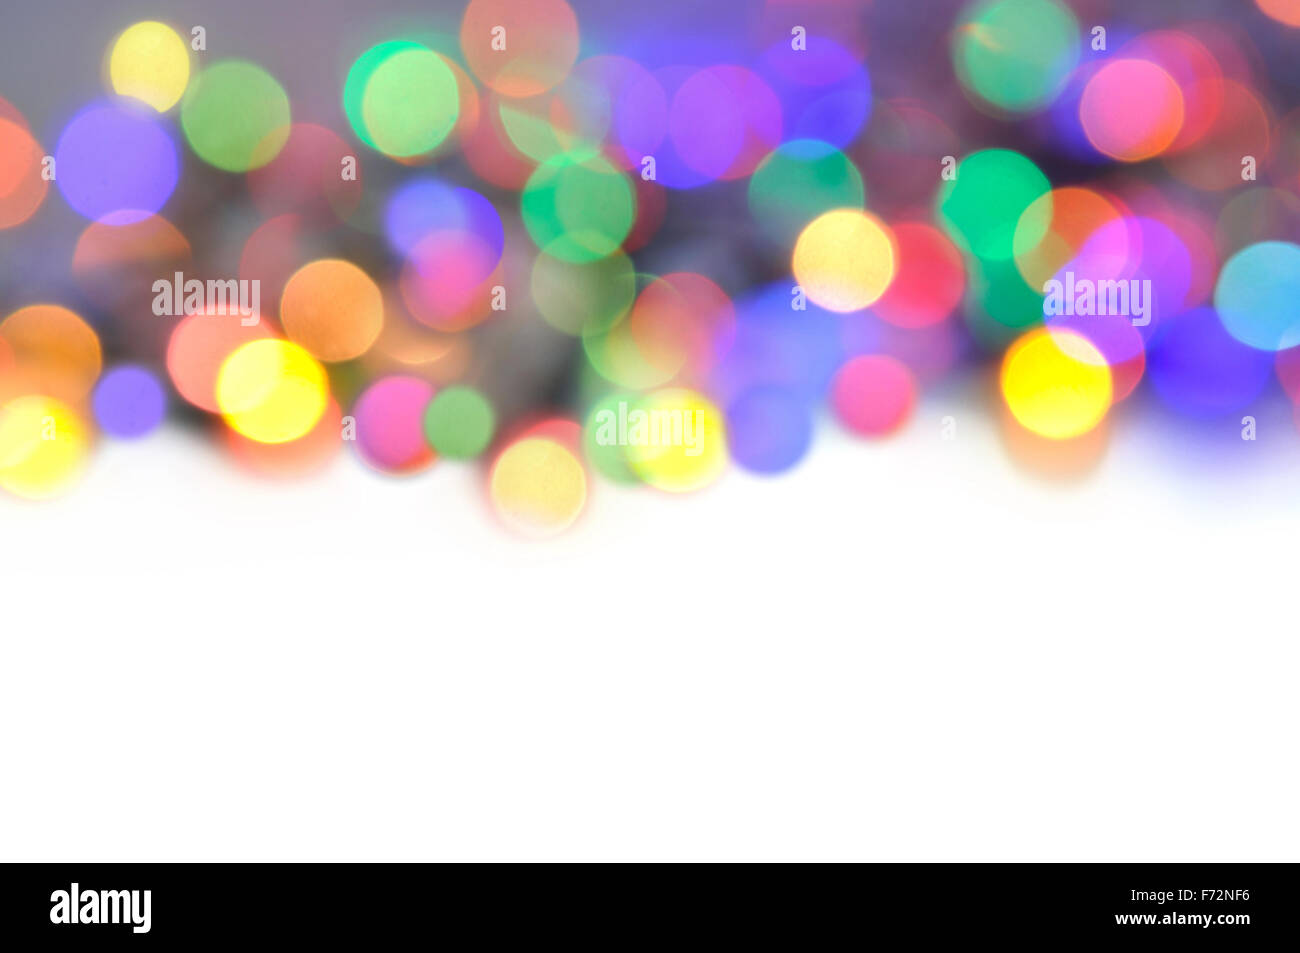 Resumen de luces multicolores con espacio en blanco Foto de stock